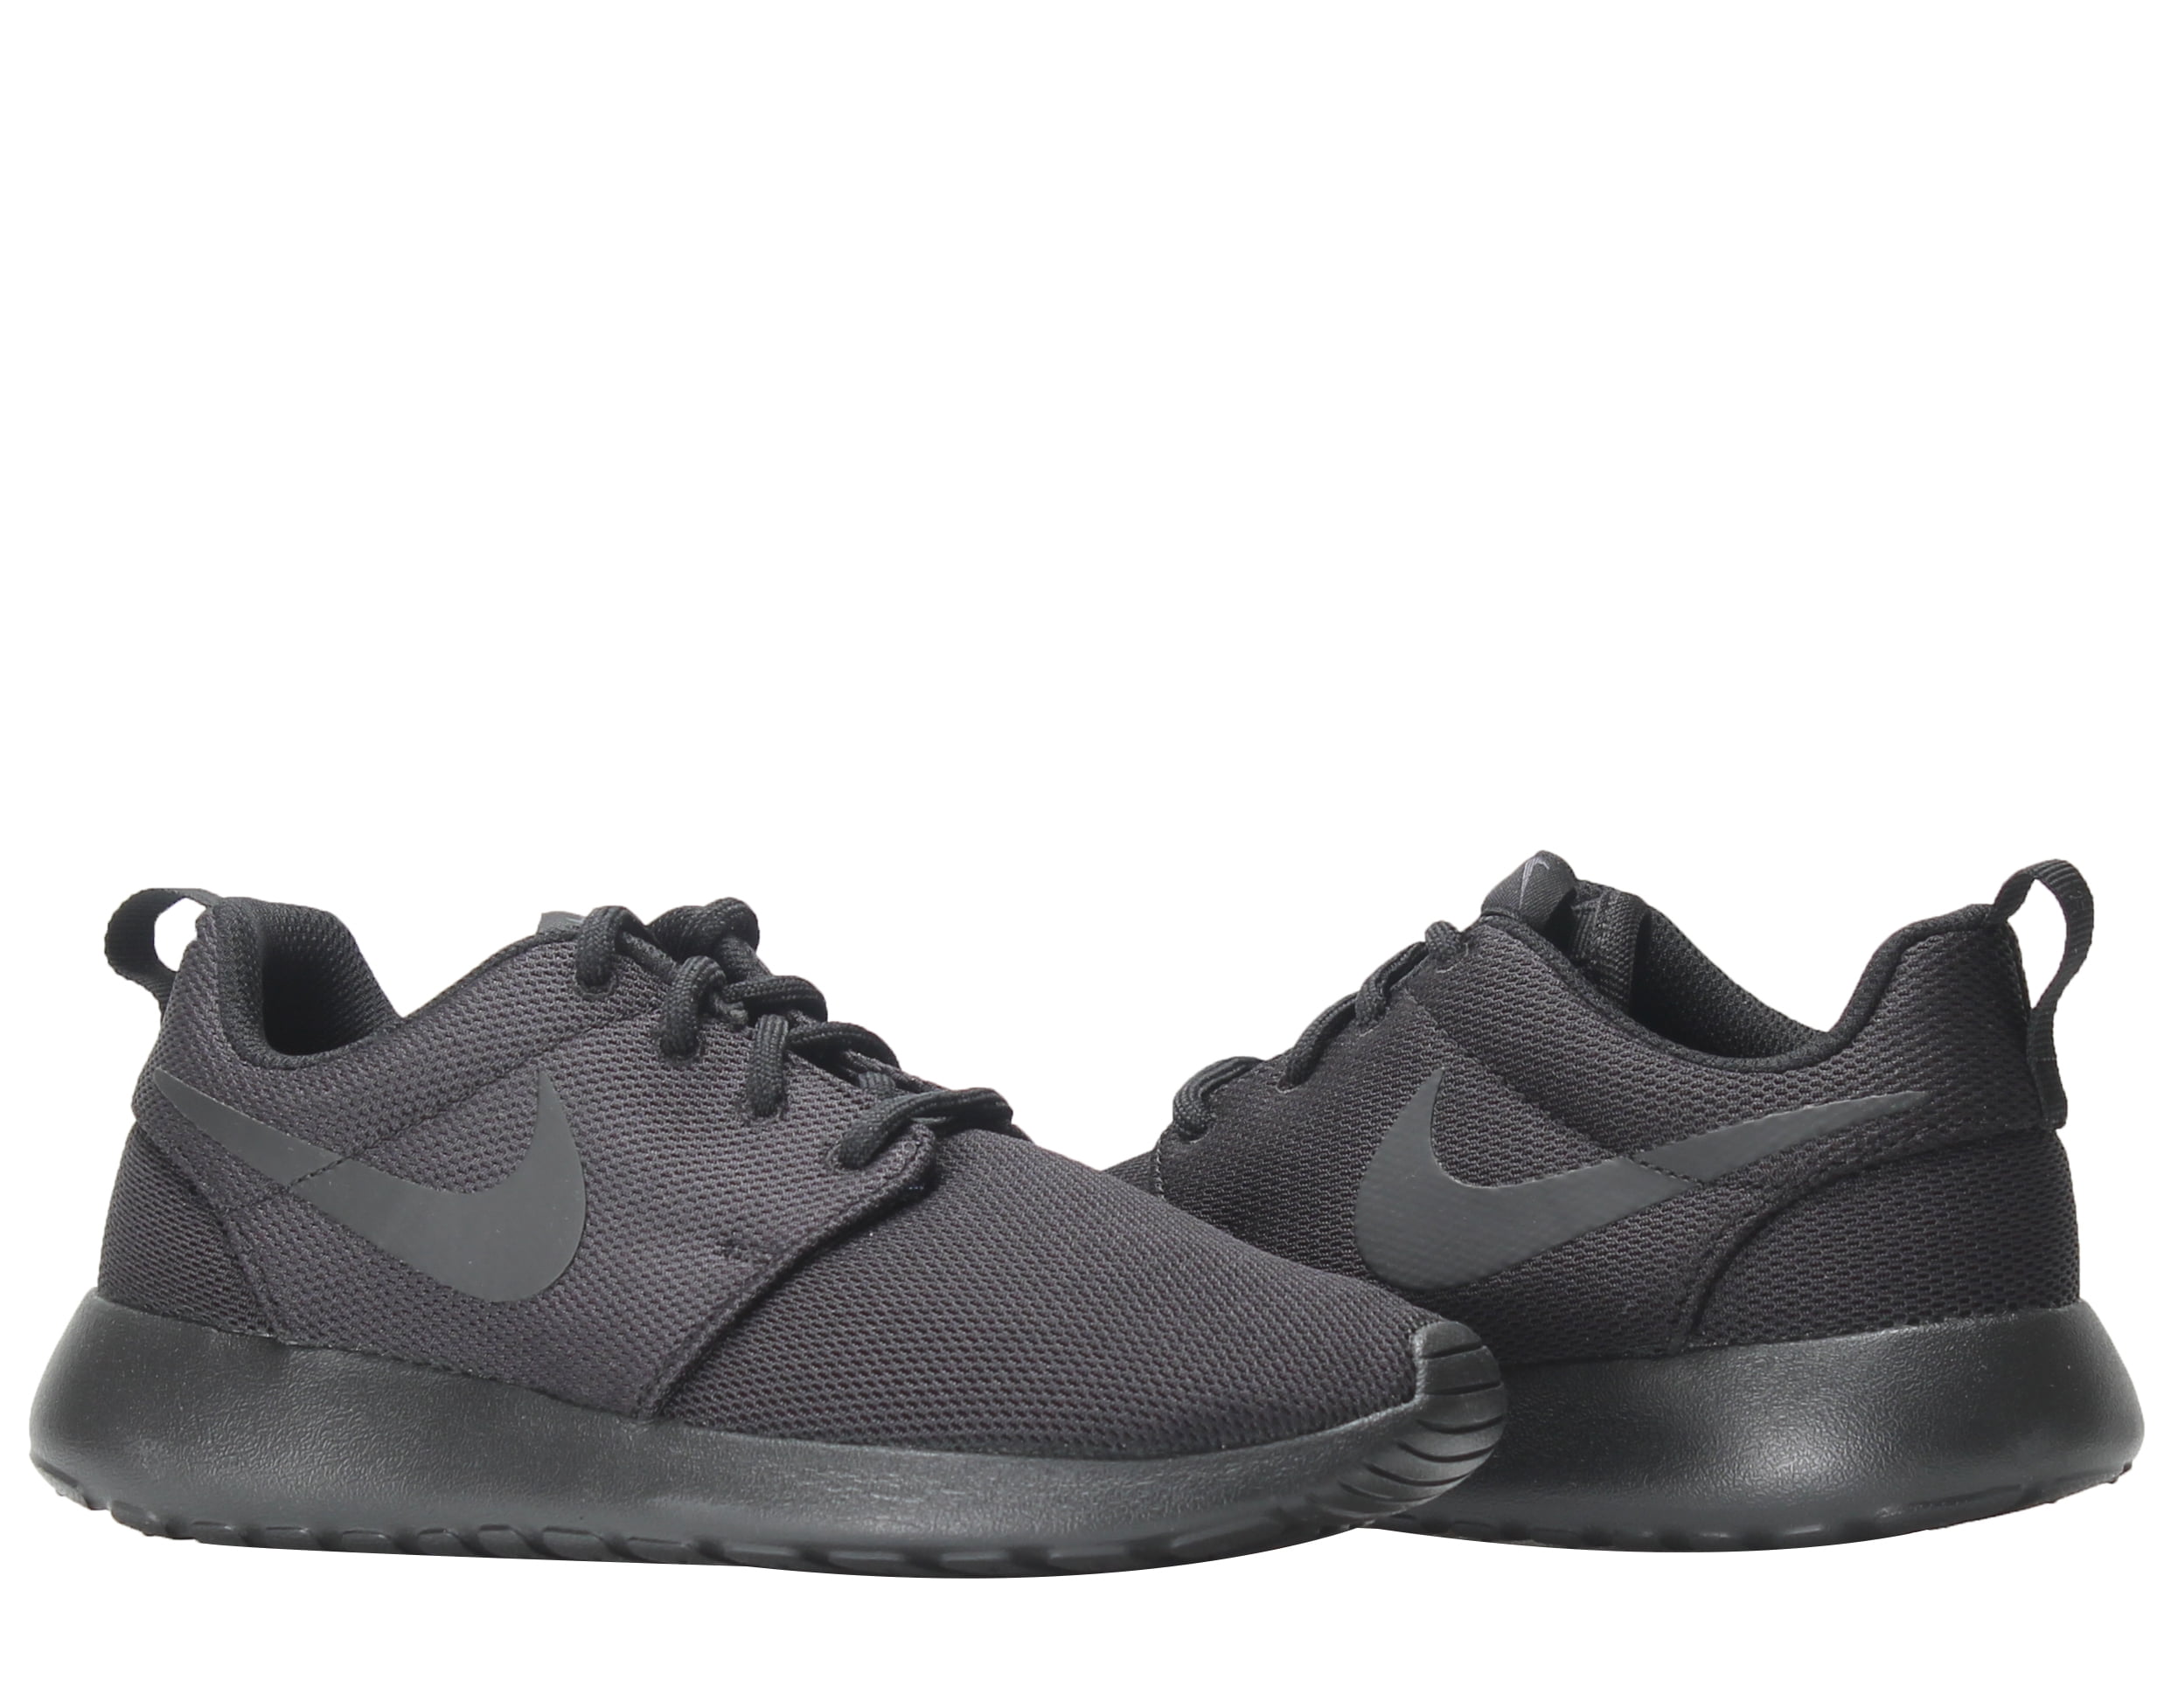 Gunst Definitie toon Nike 844994-001: Womens Roshe One running shoe Black/Dark Grey (7 B(M) US  Women) - Walmart.com